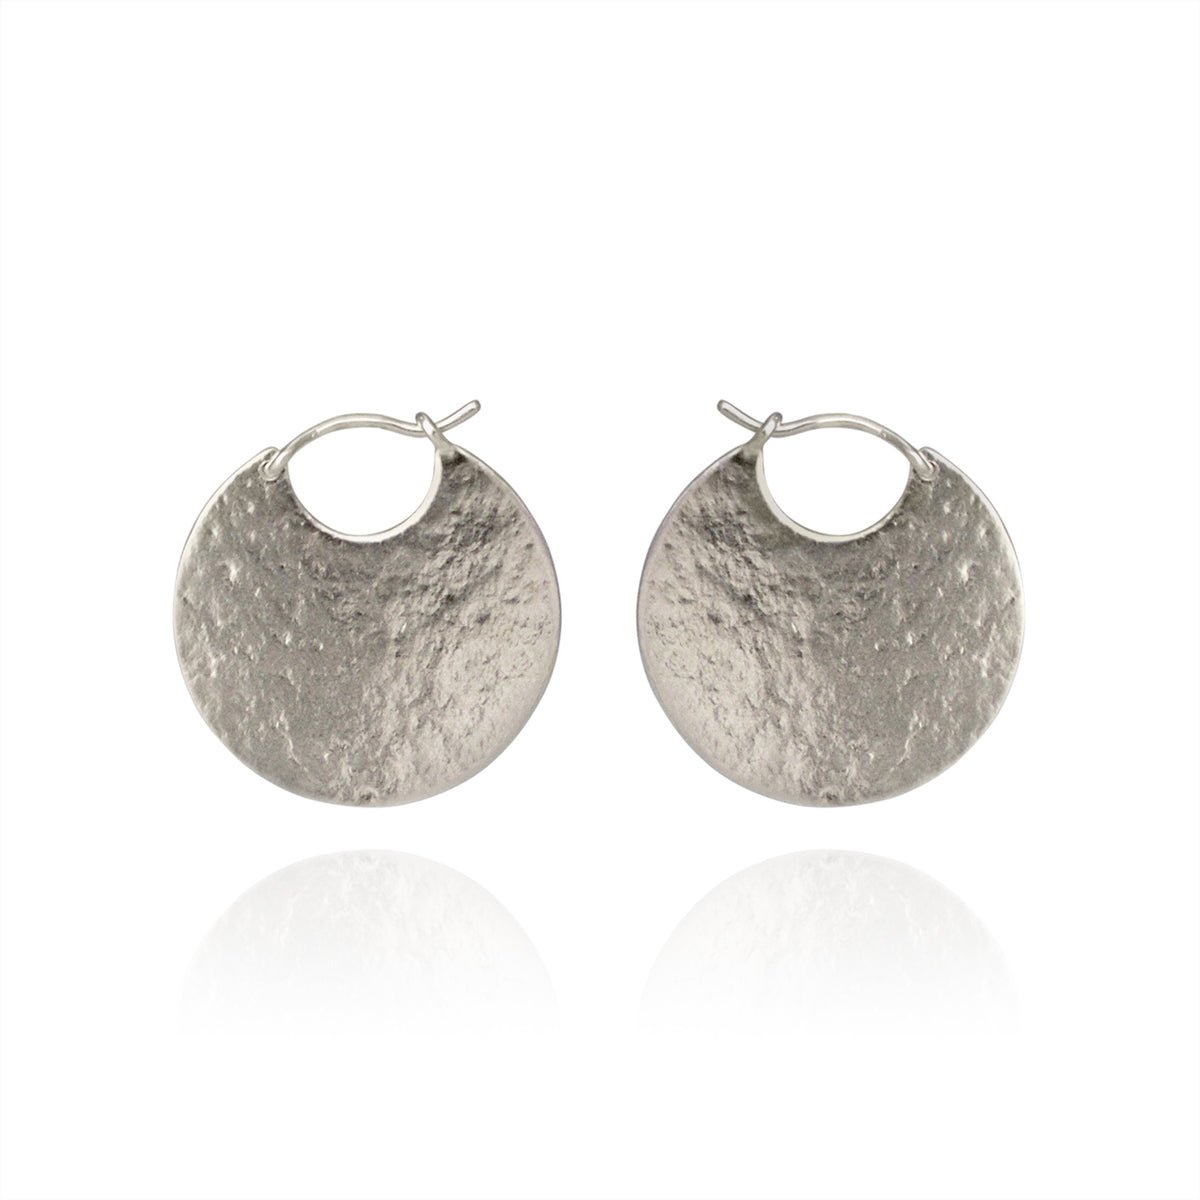 Silver disc hoop textured earrings.